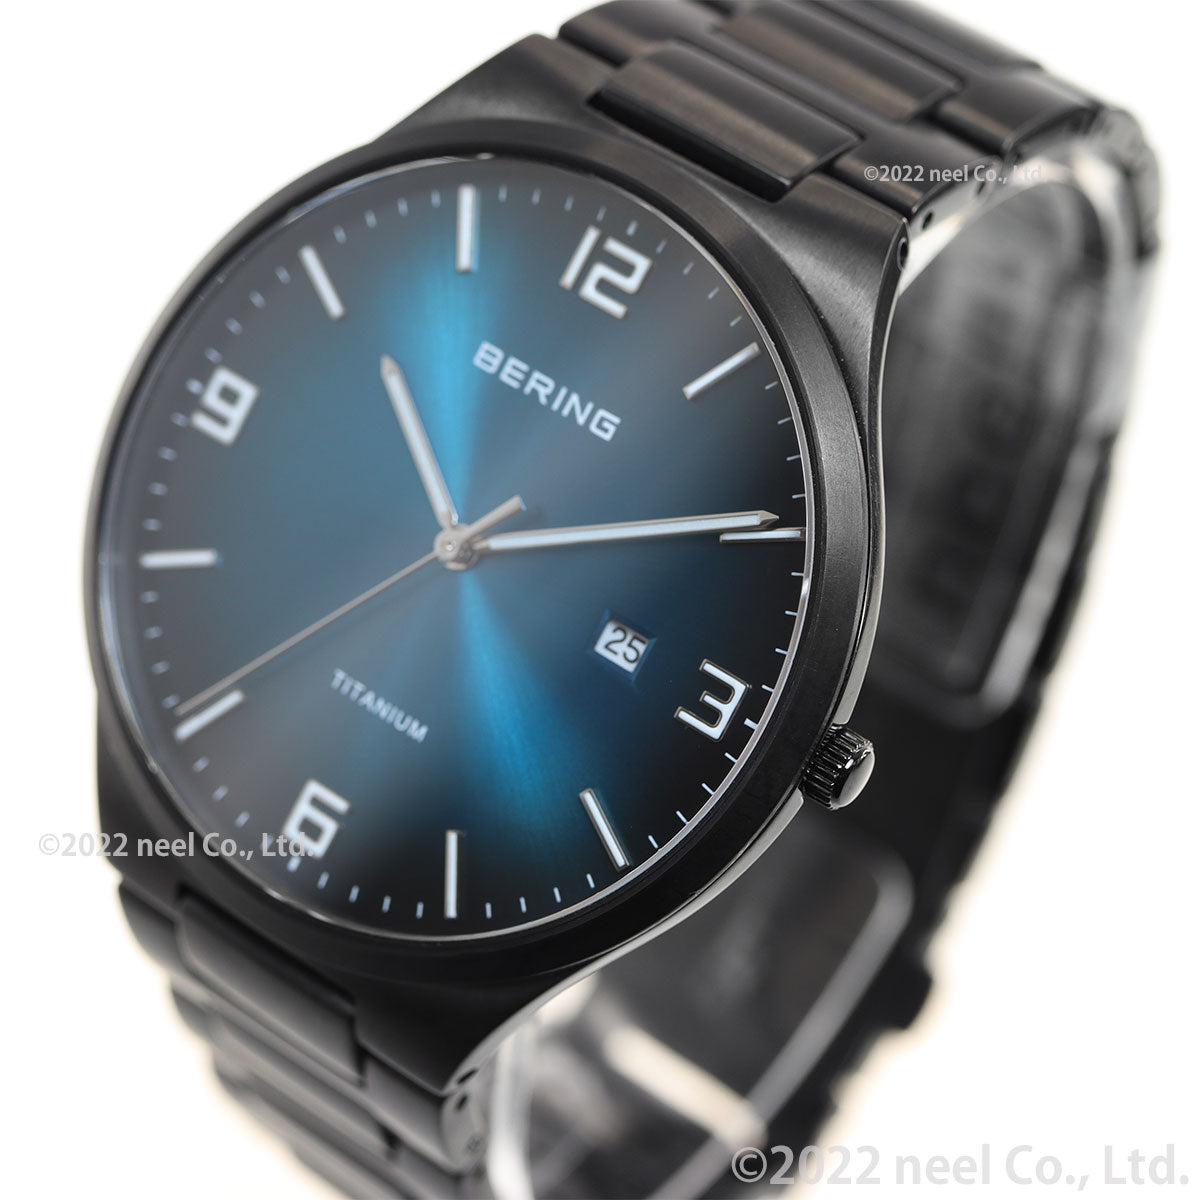 ベーリング BERING 腕時計 メンズ チタニウム TITANIUM チタン 15240-727